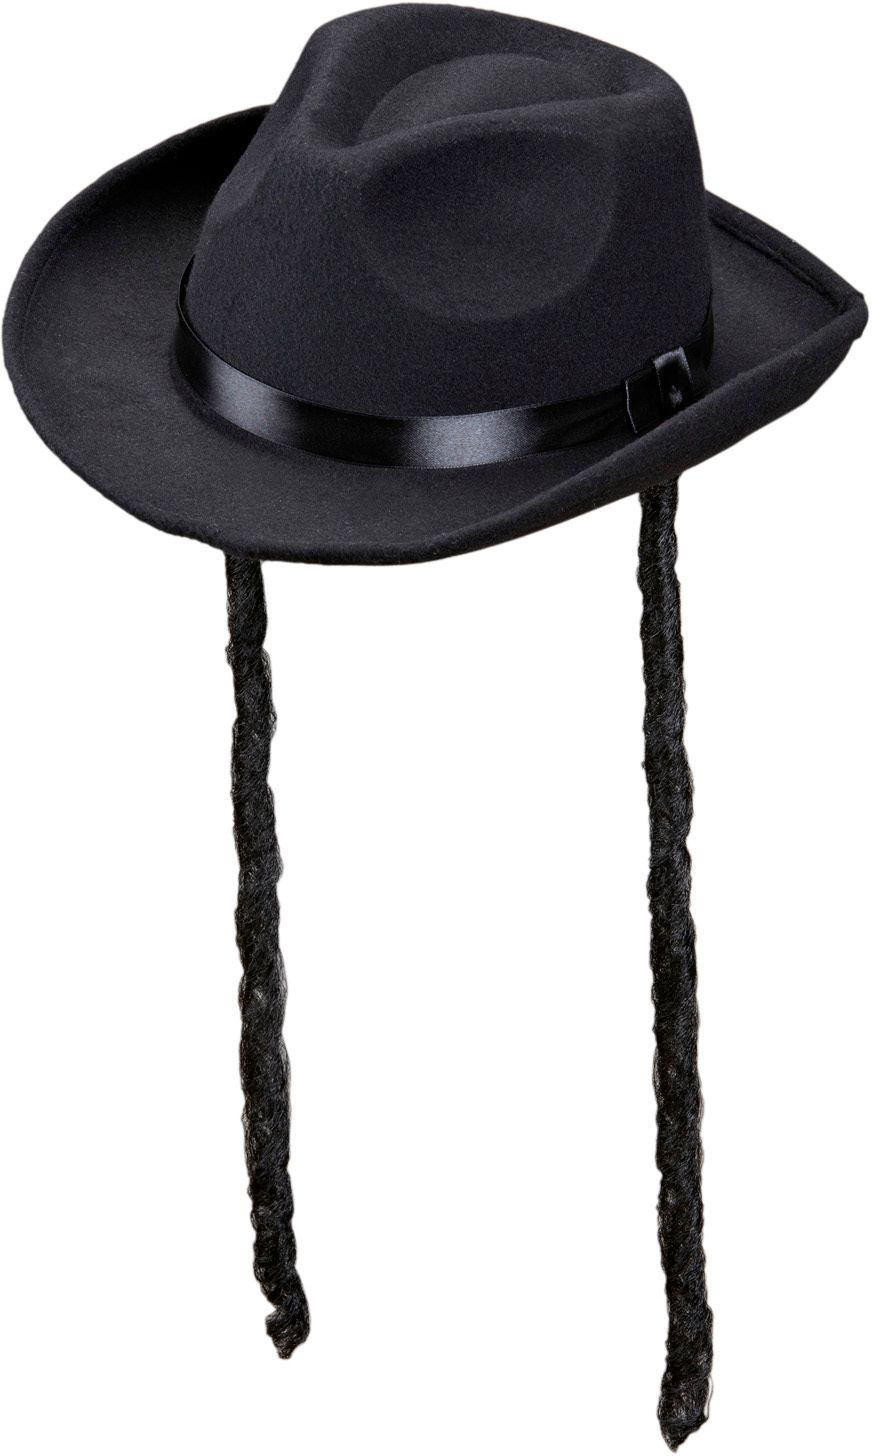 Joodse hoed met pijpenkrullen